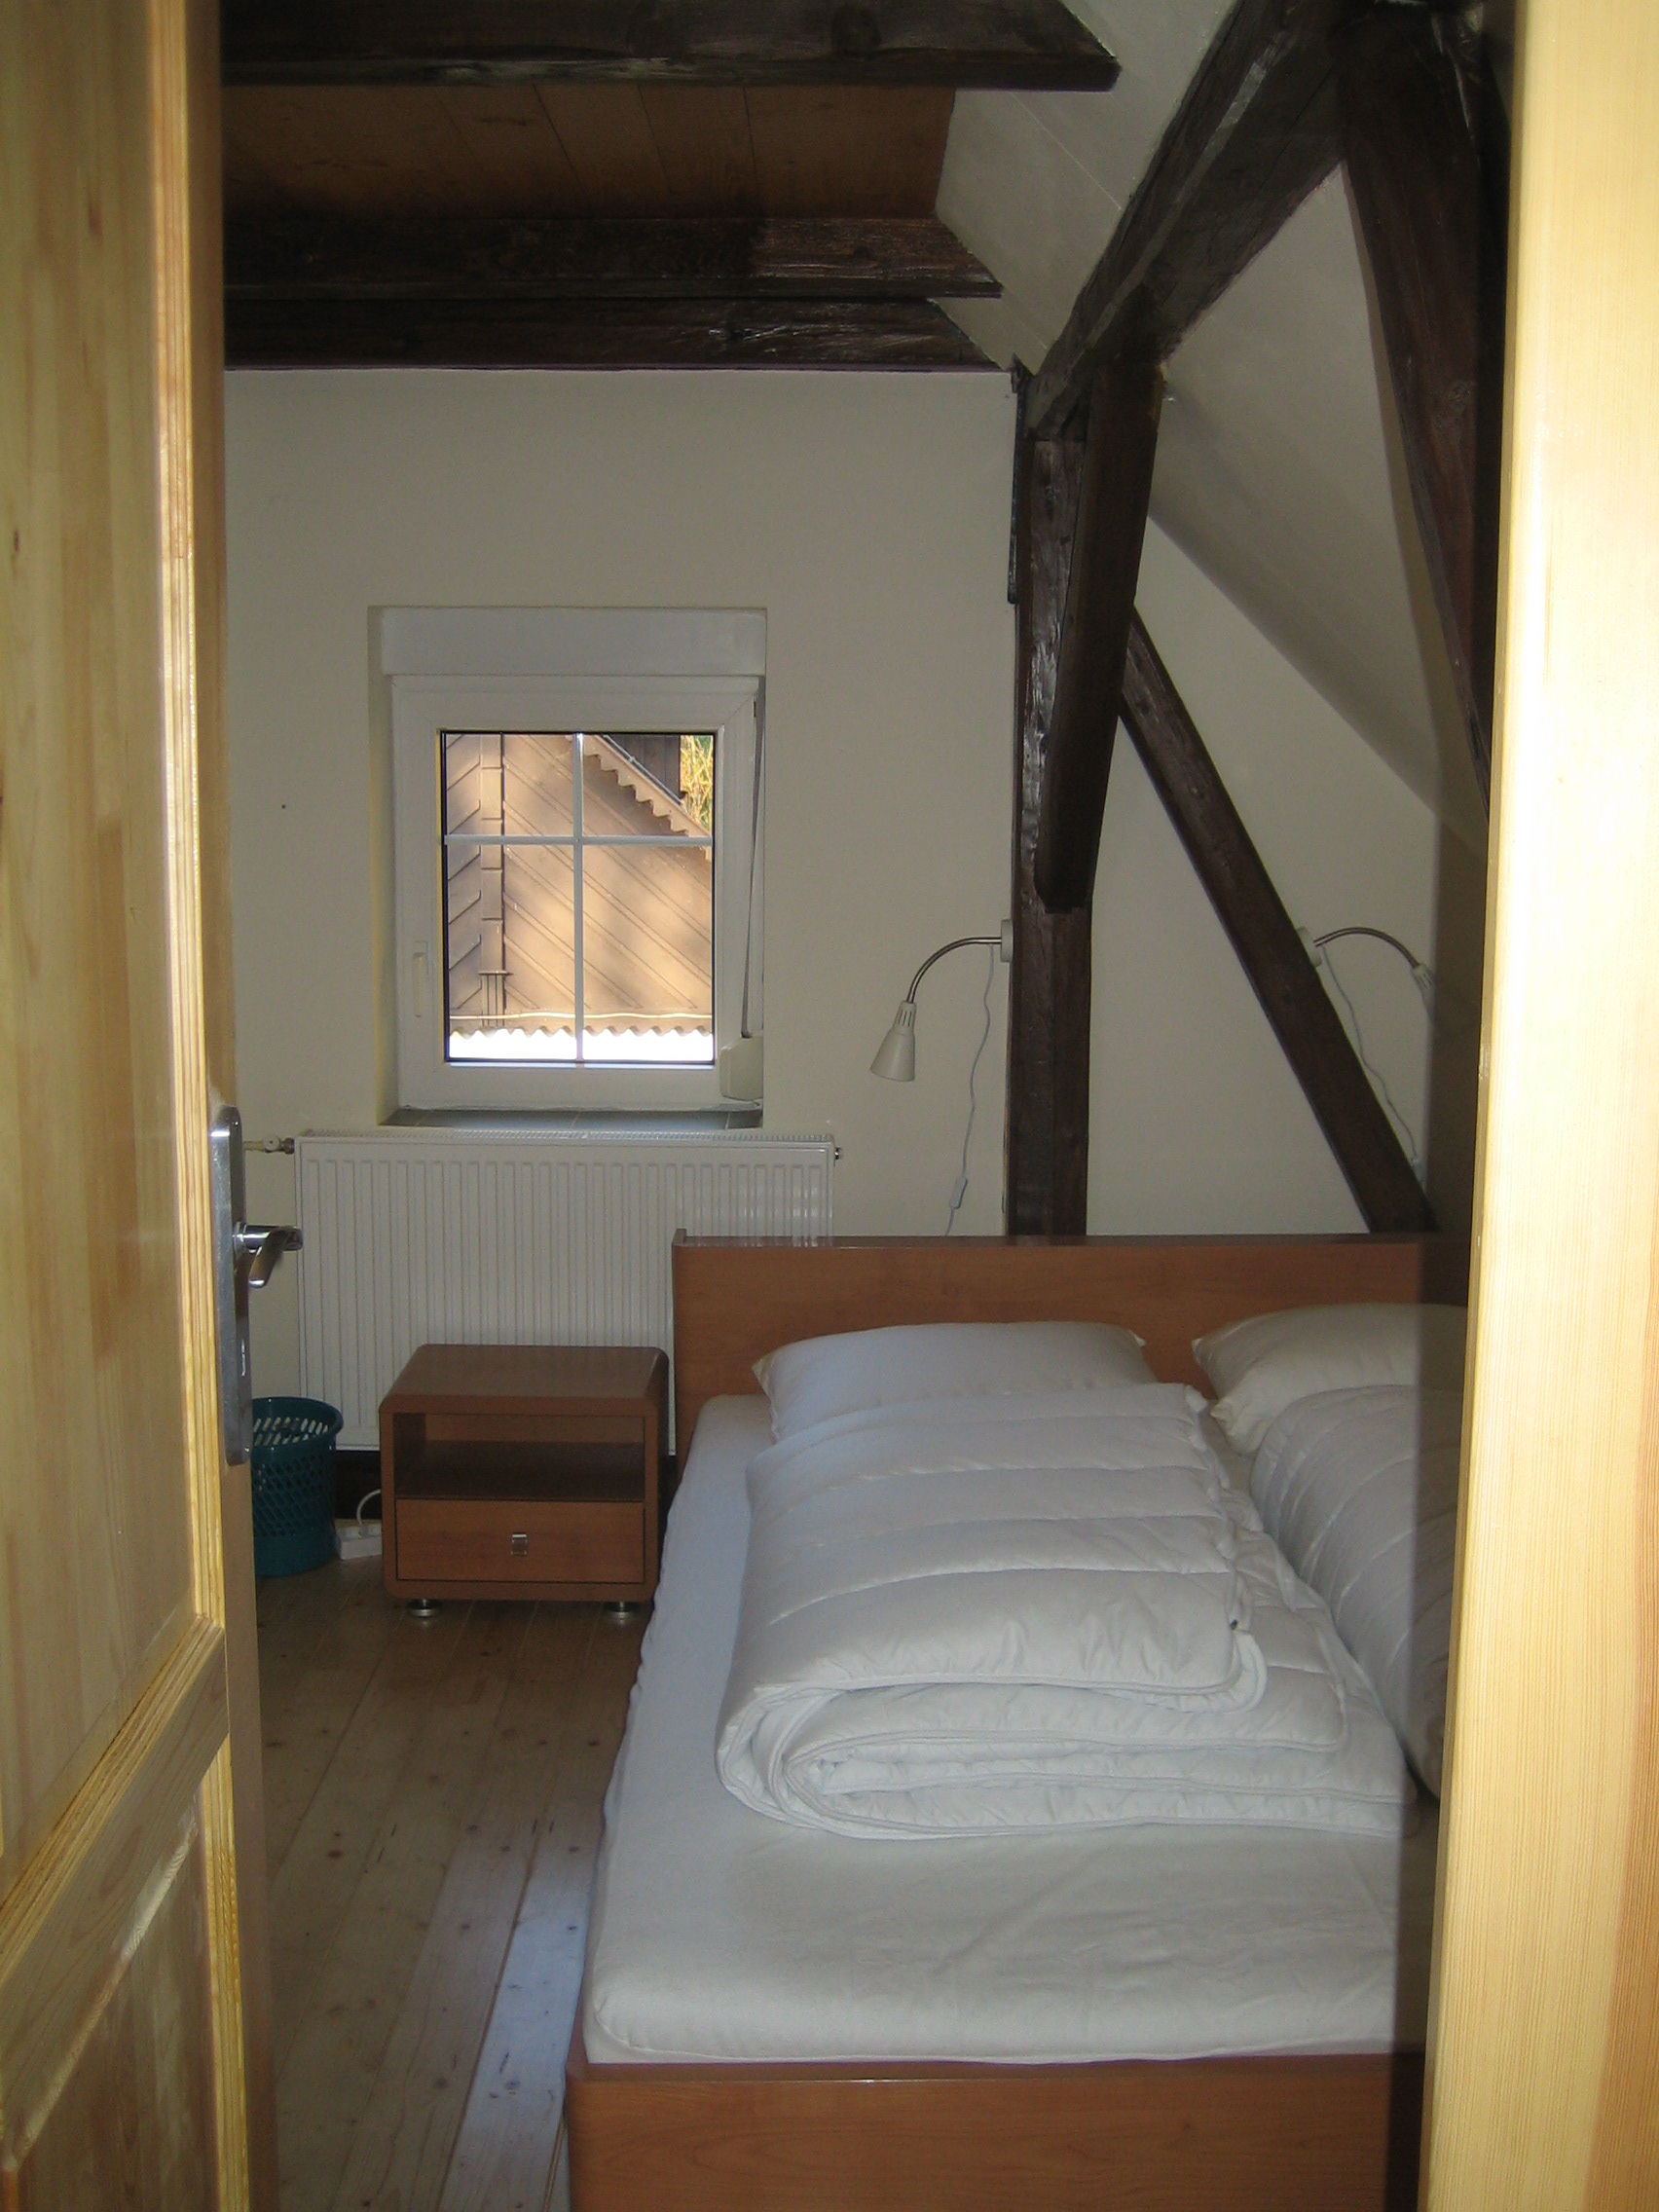 Vier slaapkamers in ruim huis, te koop in Tsjechie.